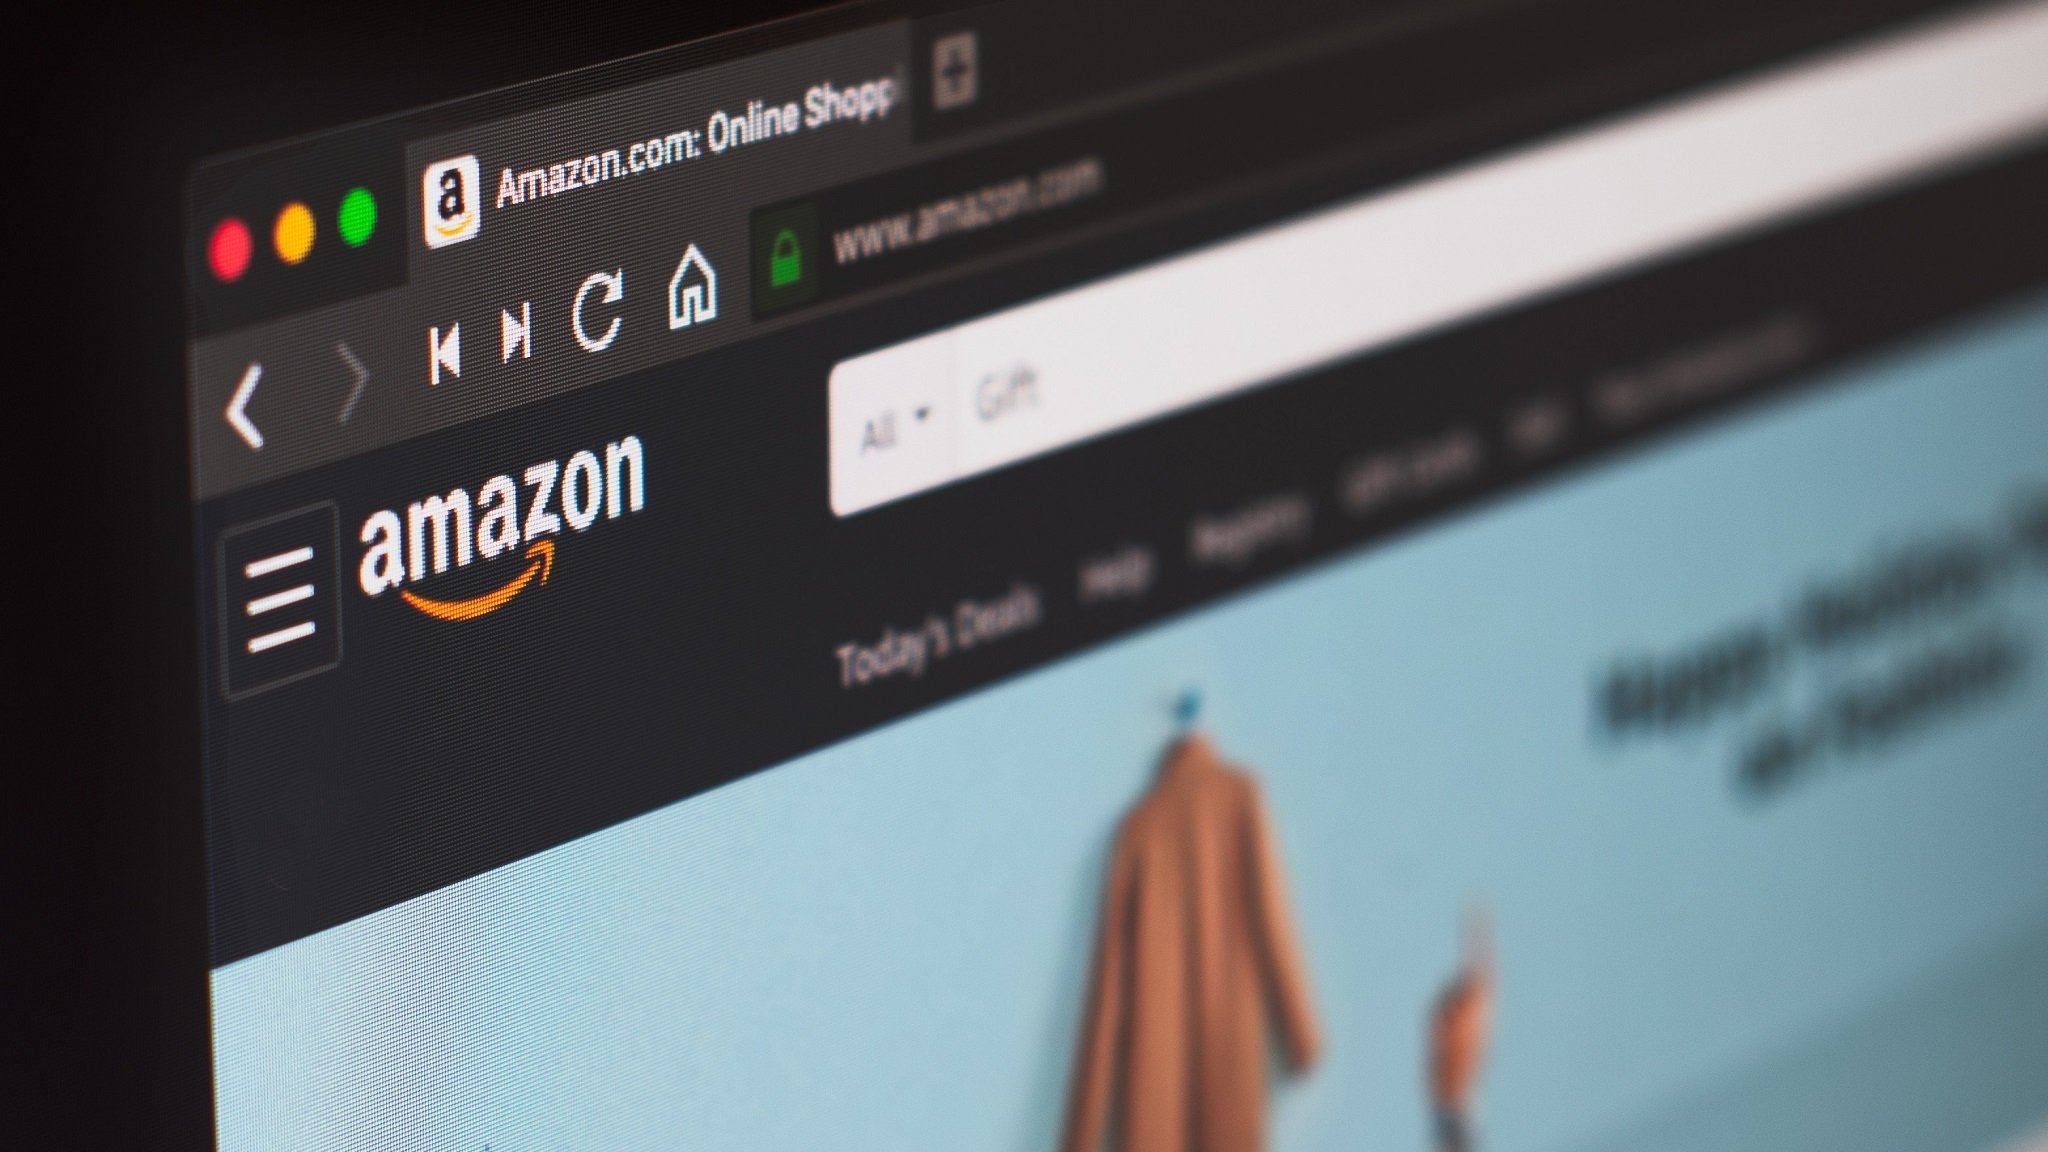 Webbrowser Amazon auf einem Laptop geöffnet